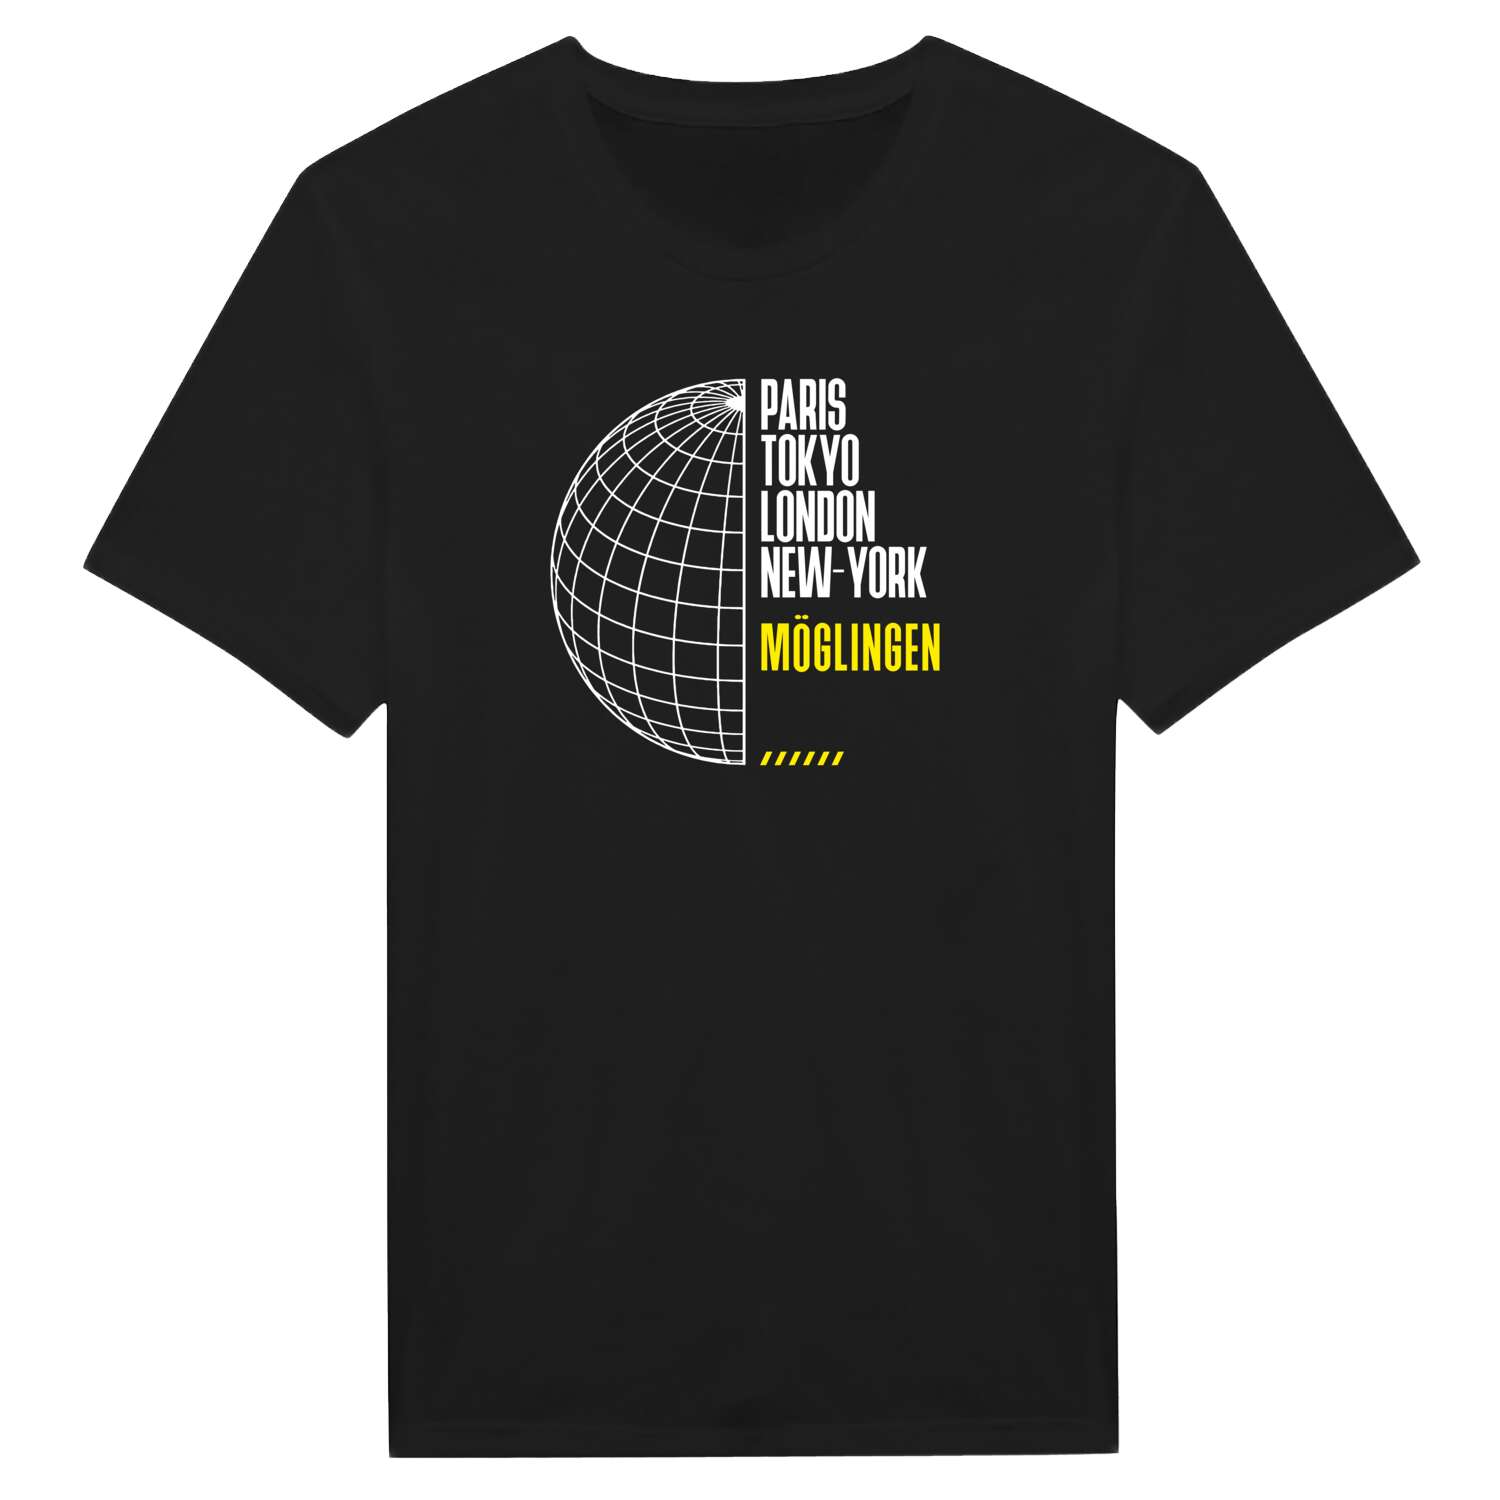 Möglingen T-Shirt »Paris Tokyo London«